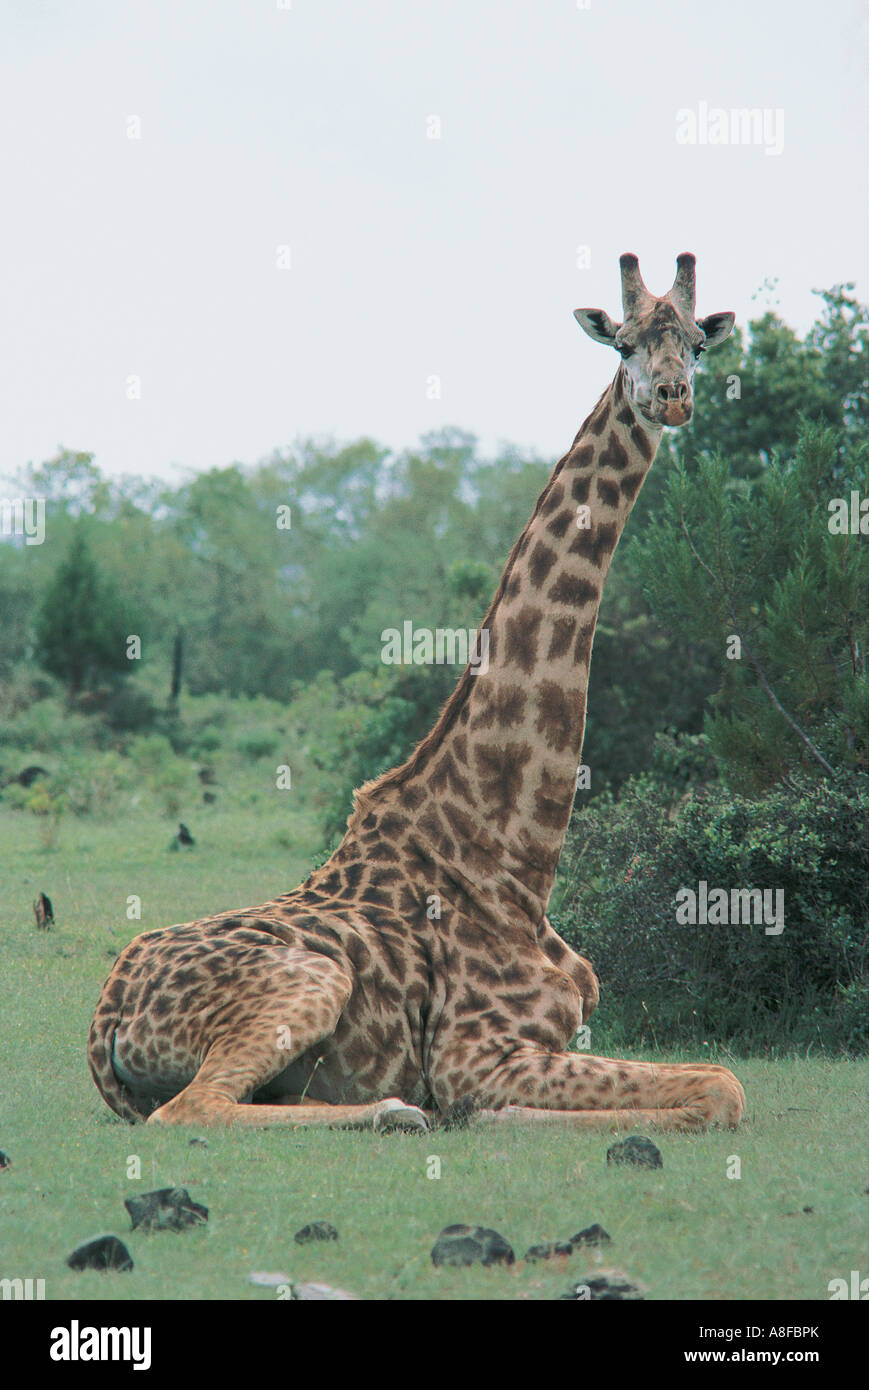 Les Masai Giraffe commune ou de s'asseoir pour se reposer et de mâcher la cud Parc National d'Arusha en Tanzanie Banque D'Images